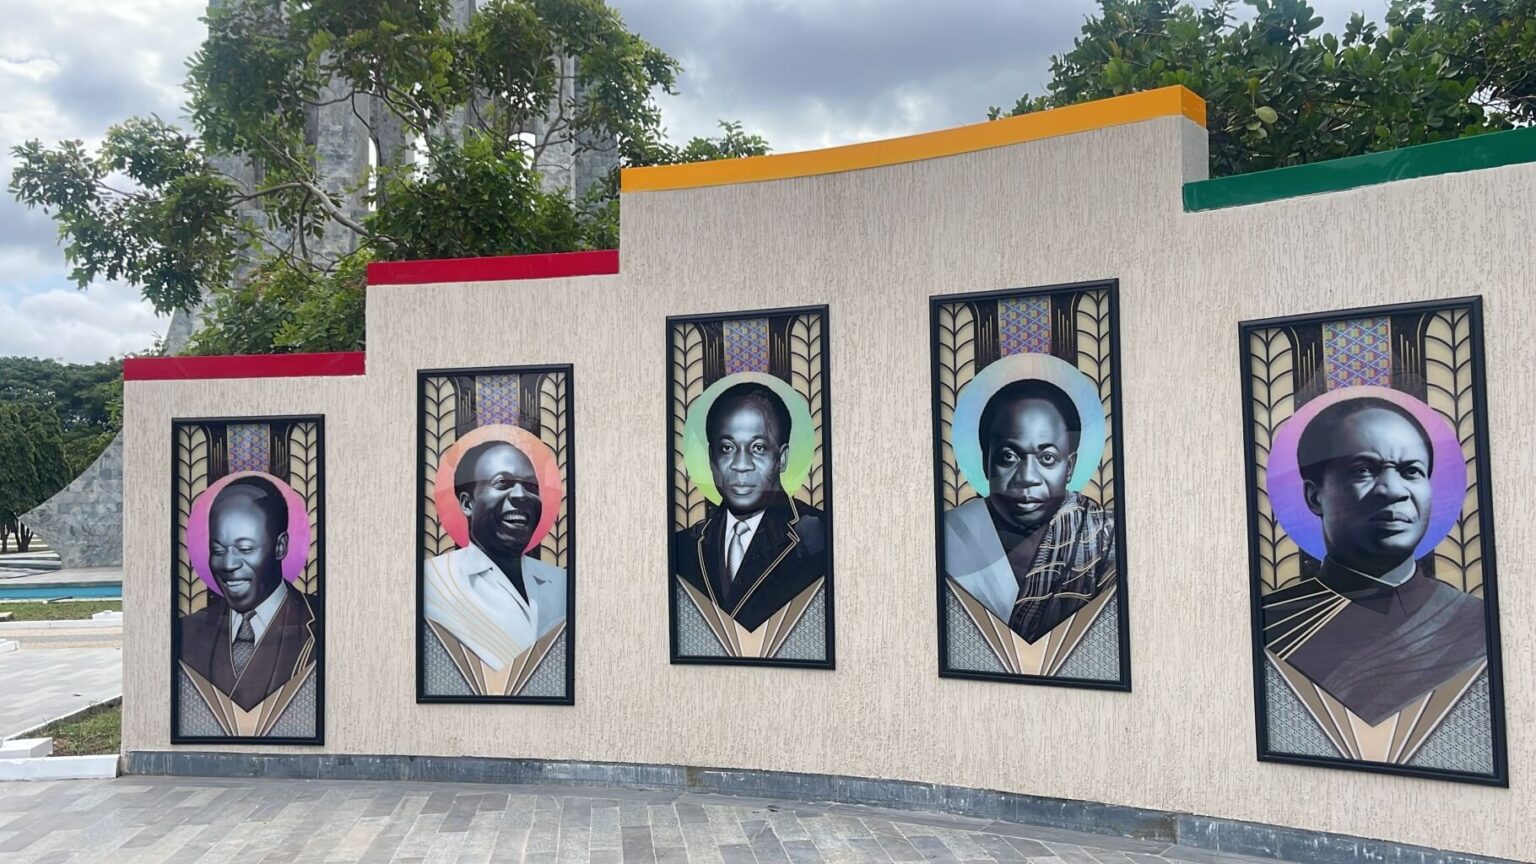 Kwame Nkrumah Memorial Park 